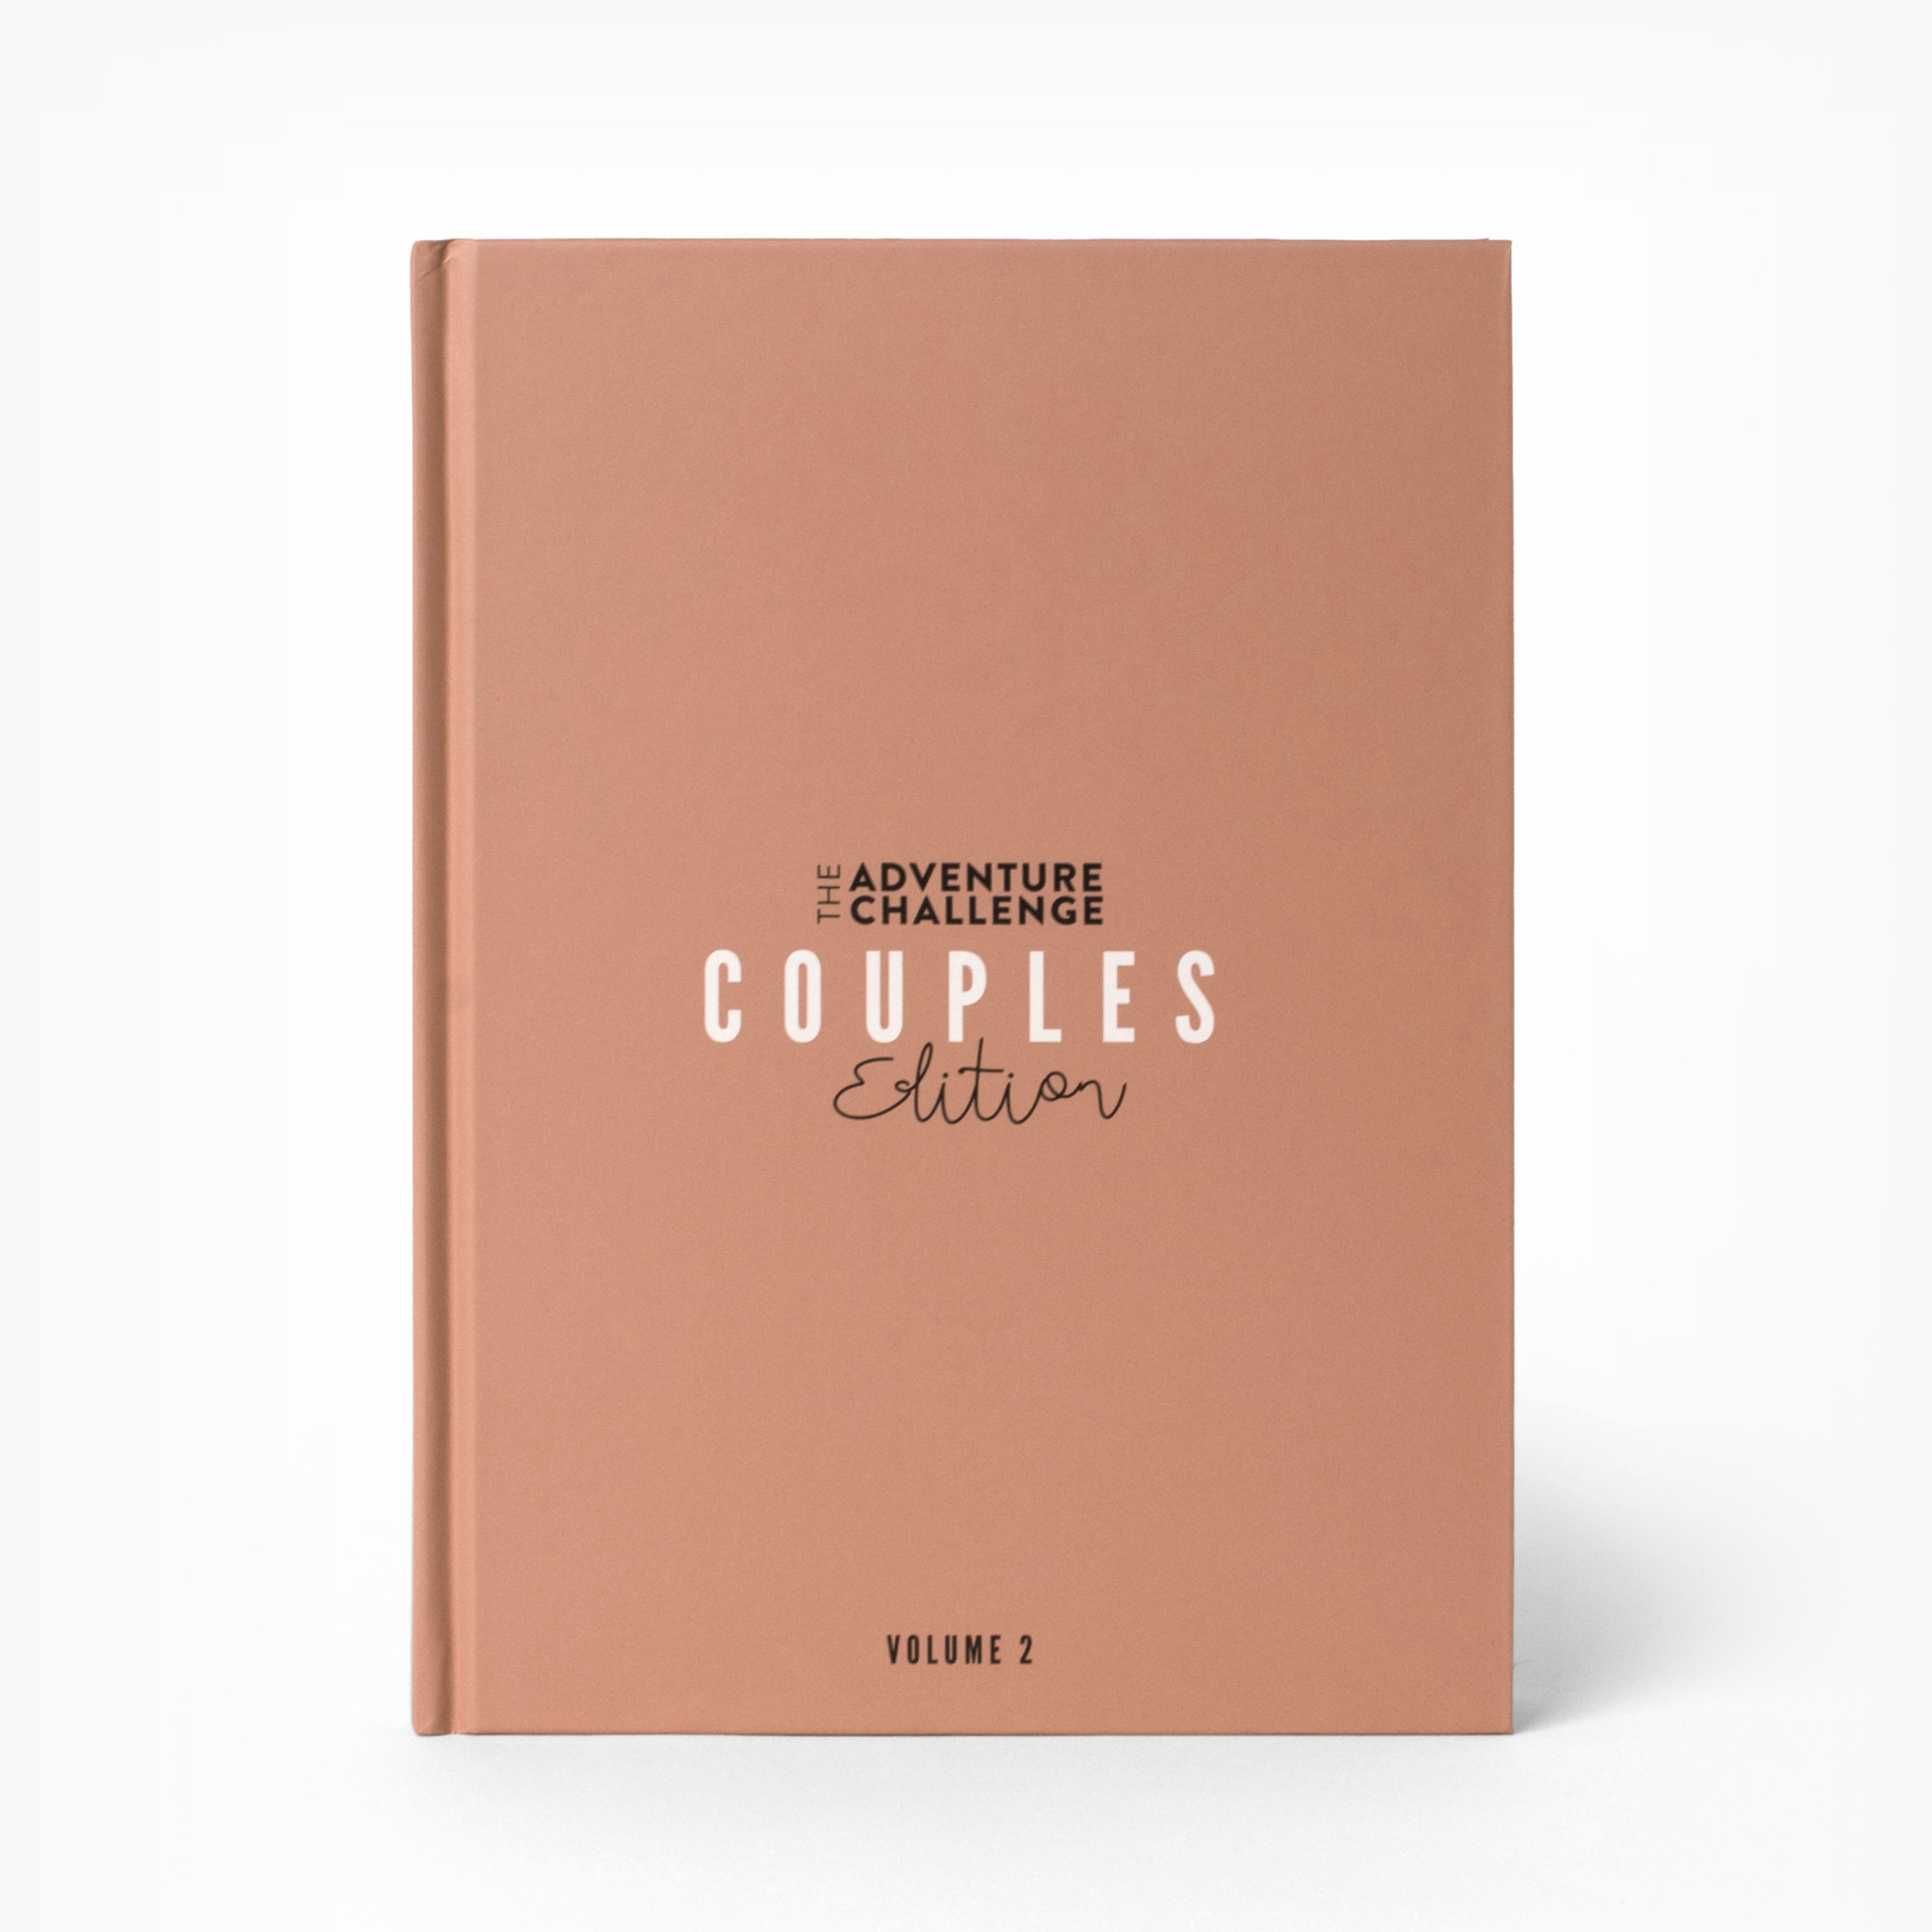 Couples Volume 2